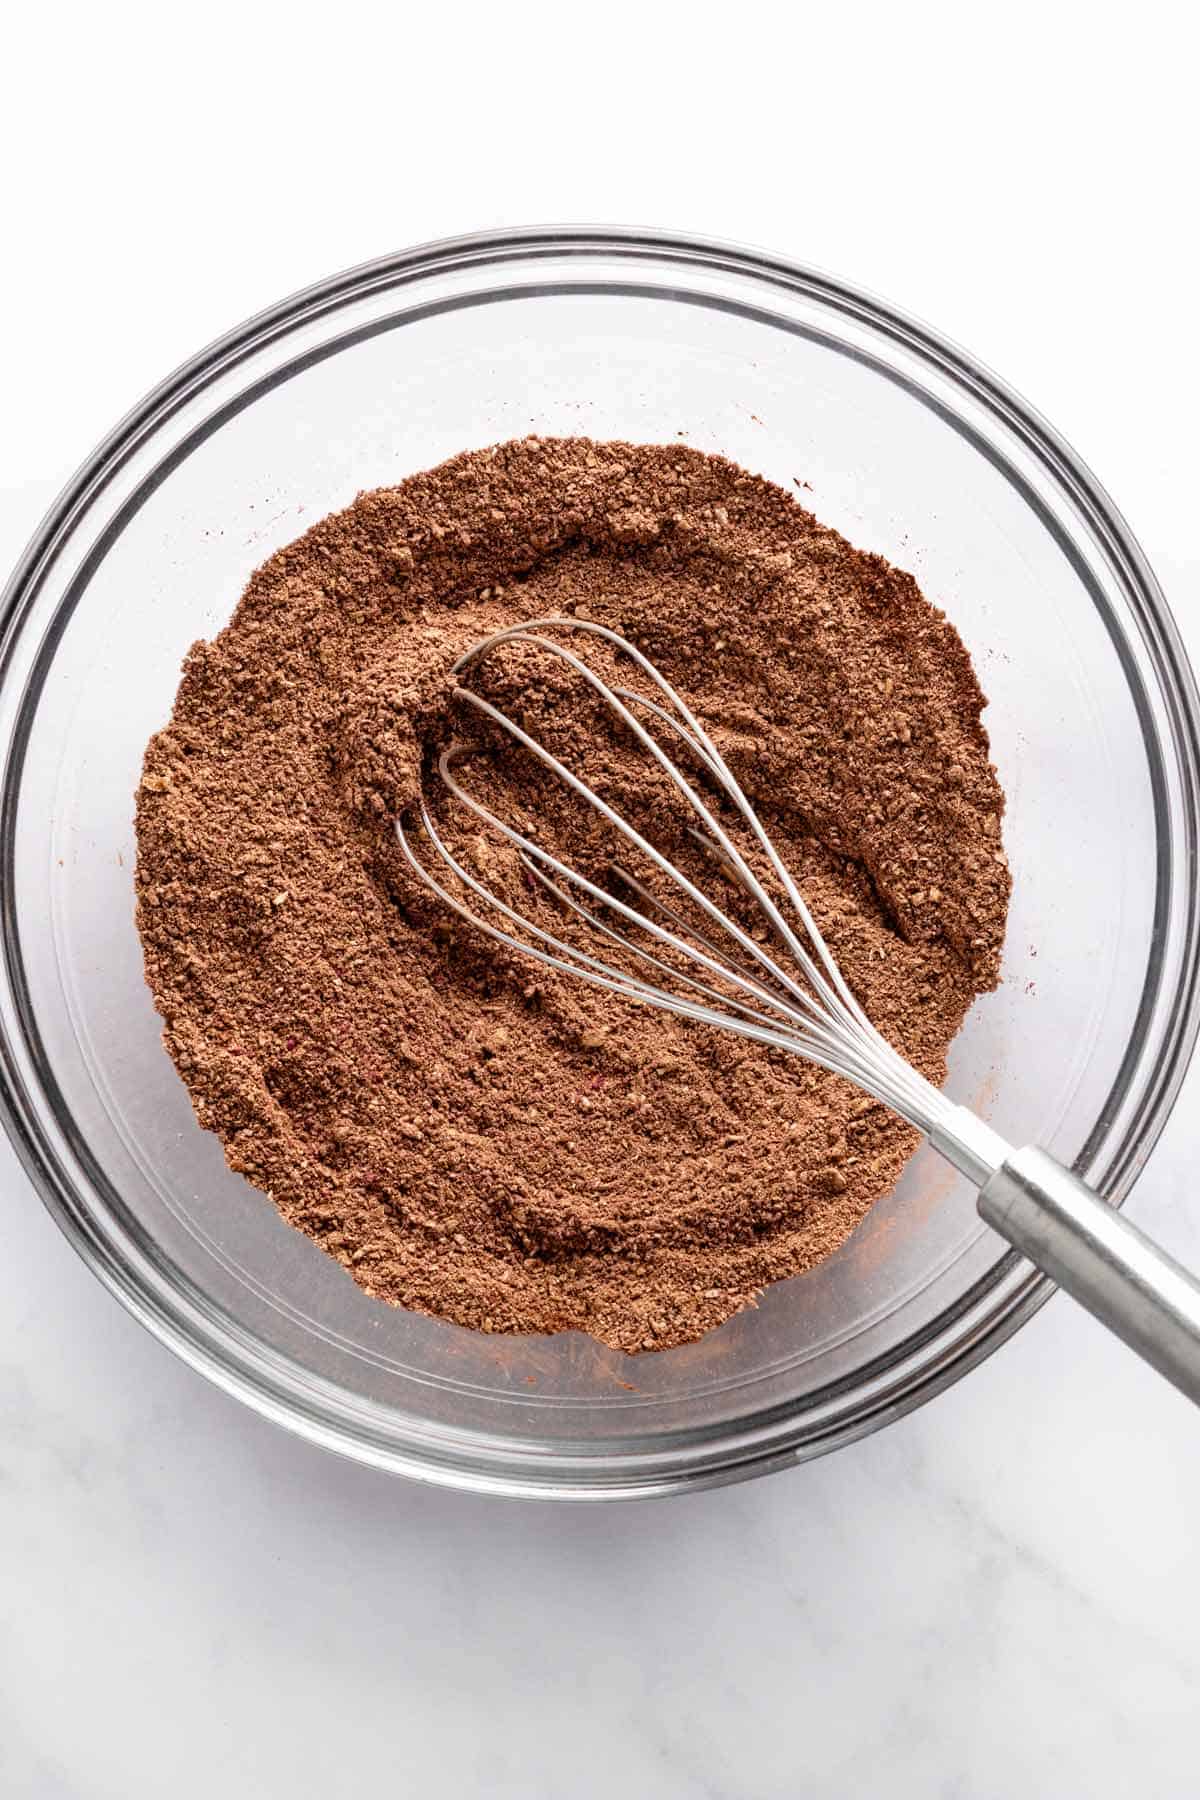 cocoa powder in a bowl.